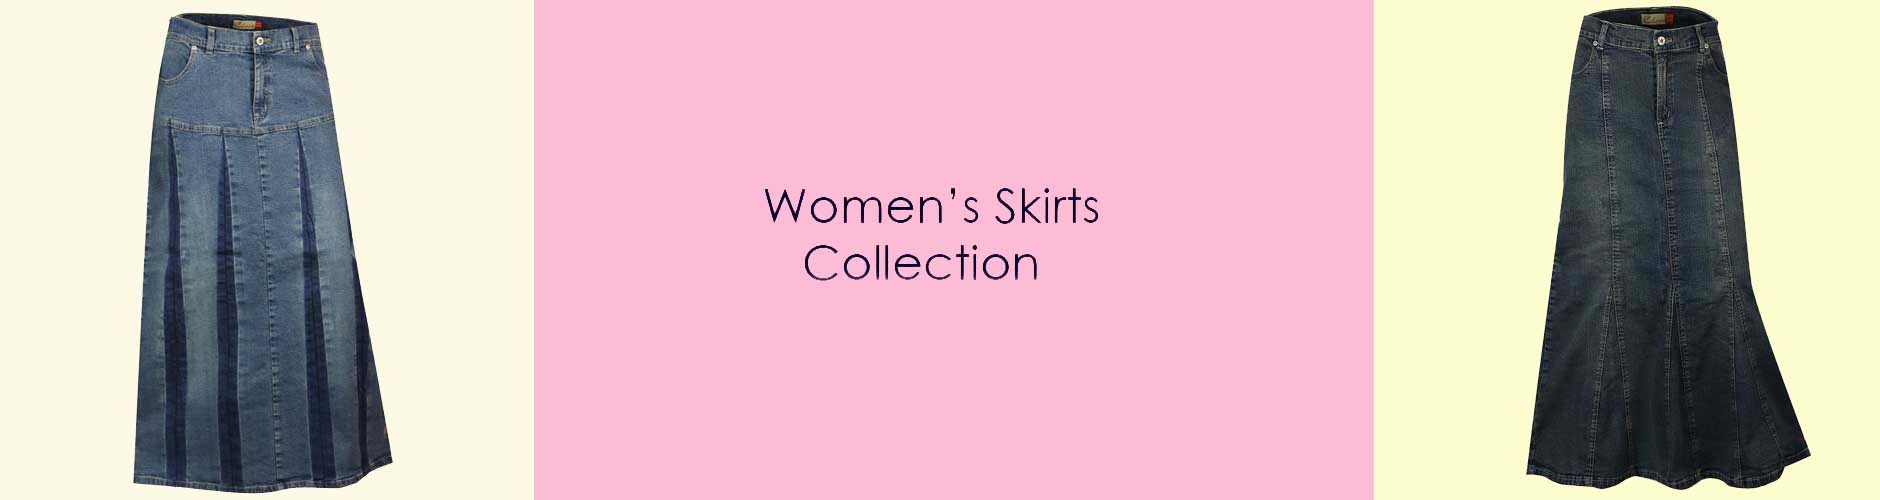 denim skirts for women